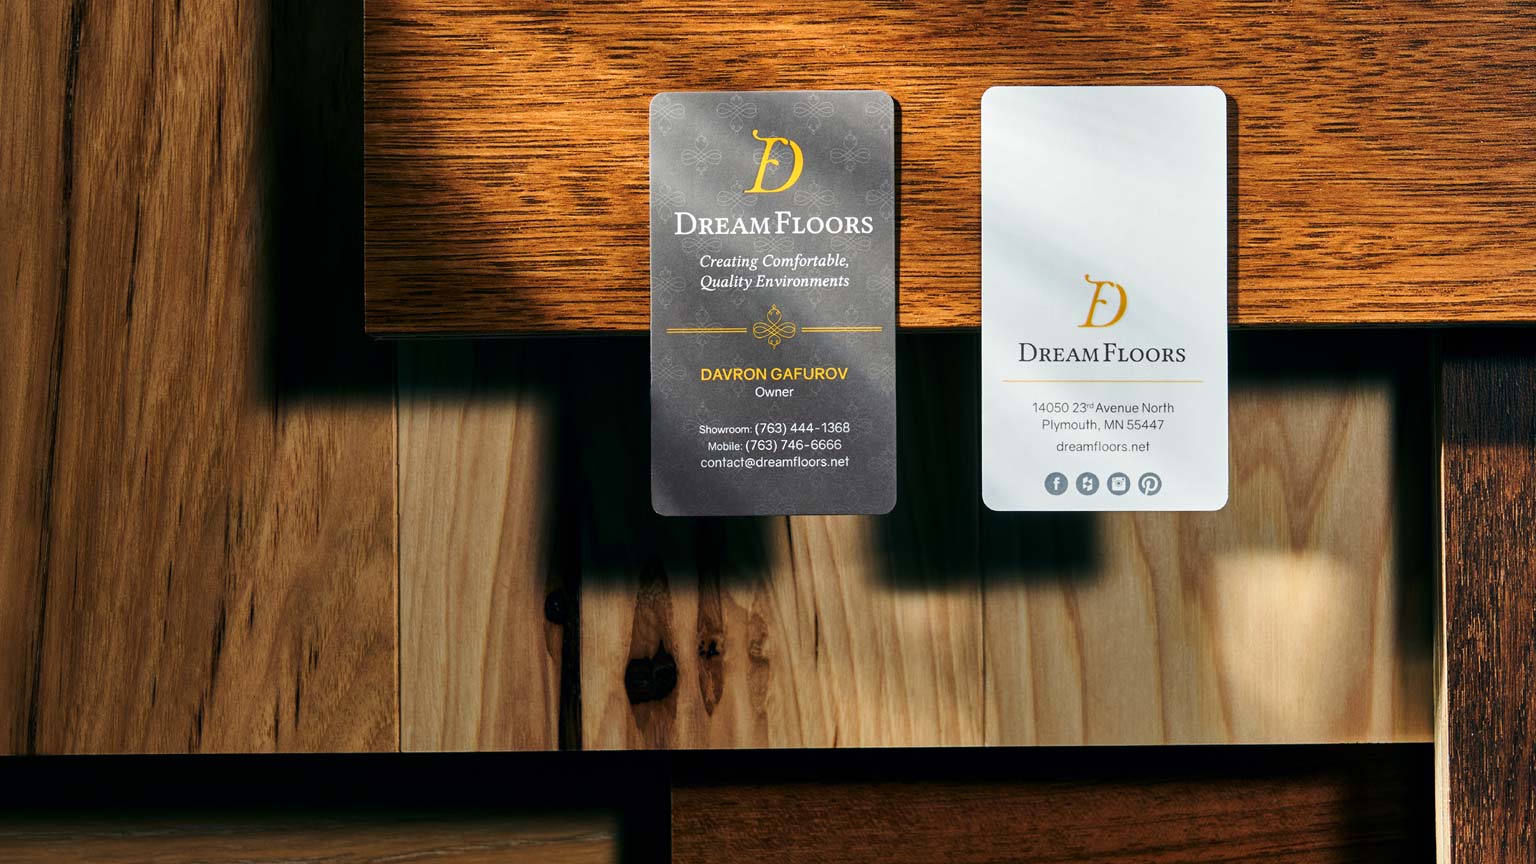 Custom designed business cards for Dream Floors over flooring samples.